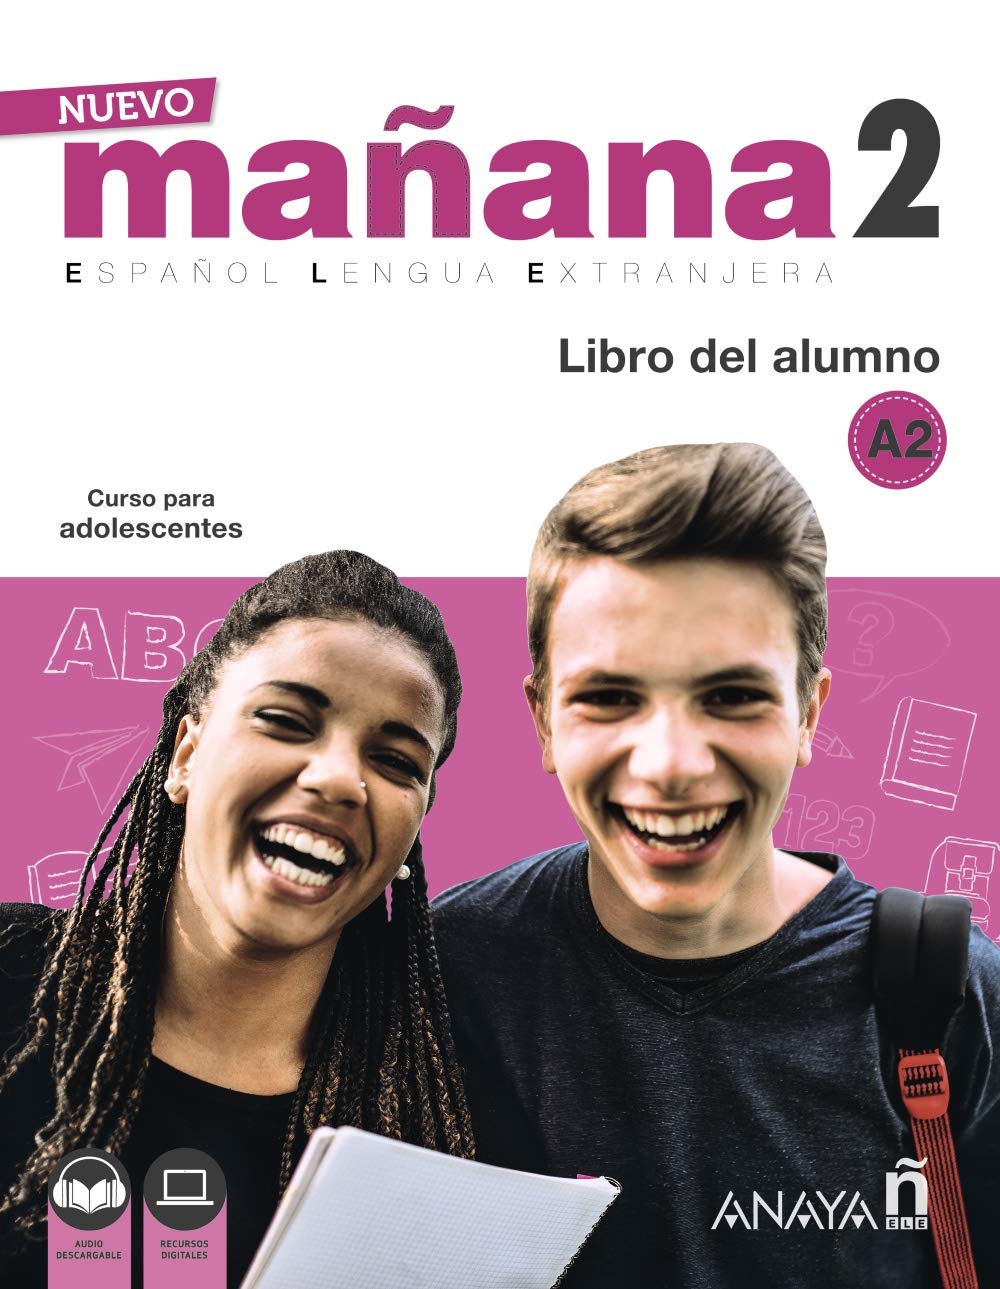 NUEVO MANANA 2 Libro del alumno + audio download